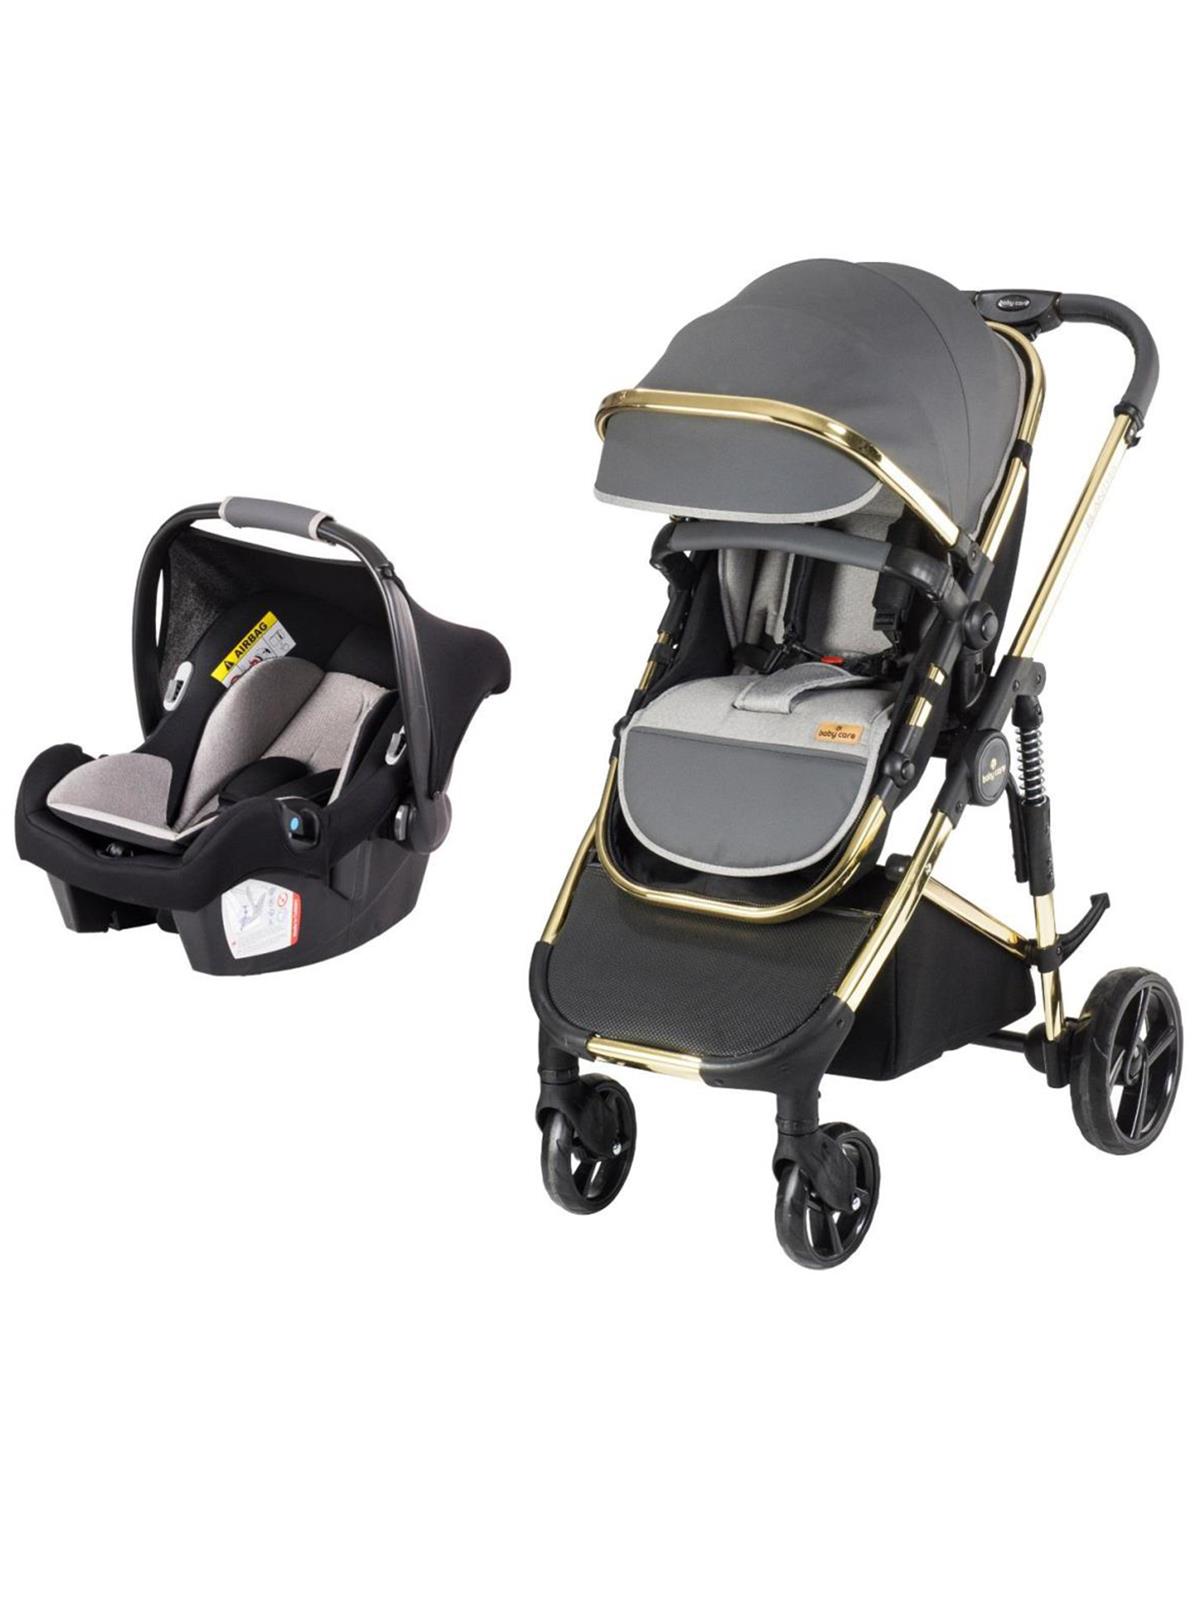 BabyCare Elantra Premium Travel Puset Sistem Bebek Arabası Gri